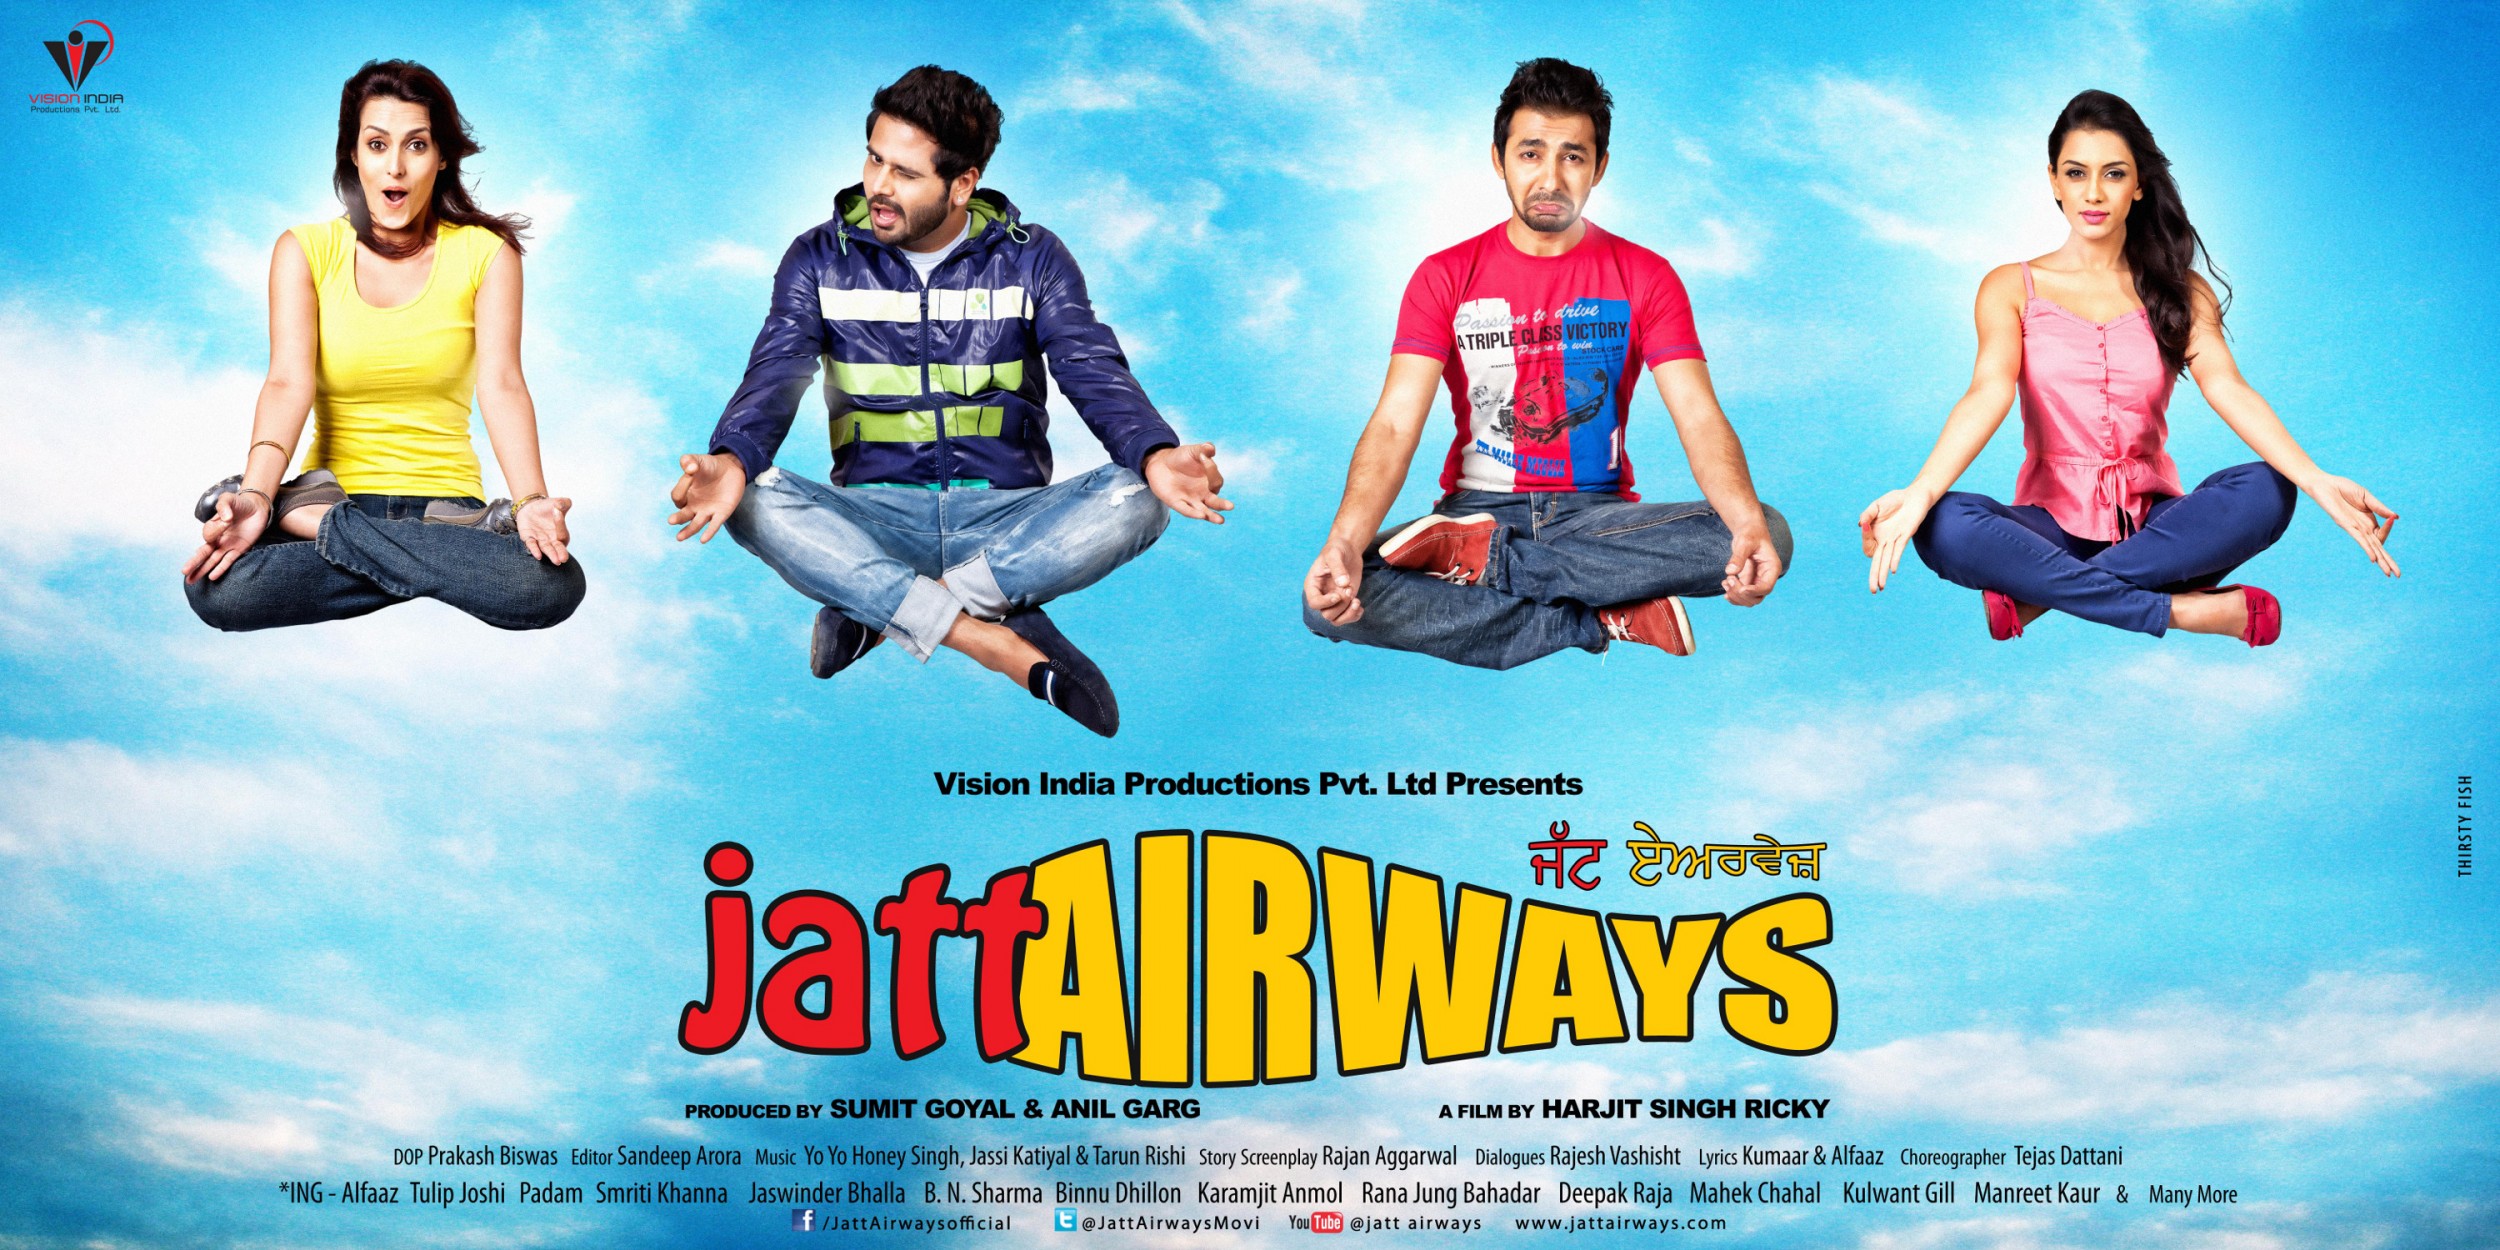 Mega Sized Movie Poster Image for Jatt Airways (#7 of 8)